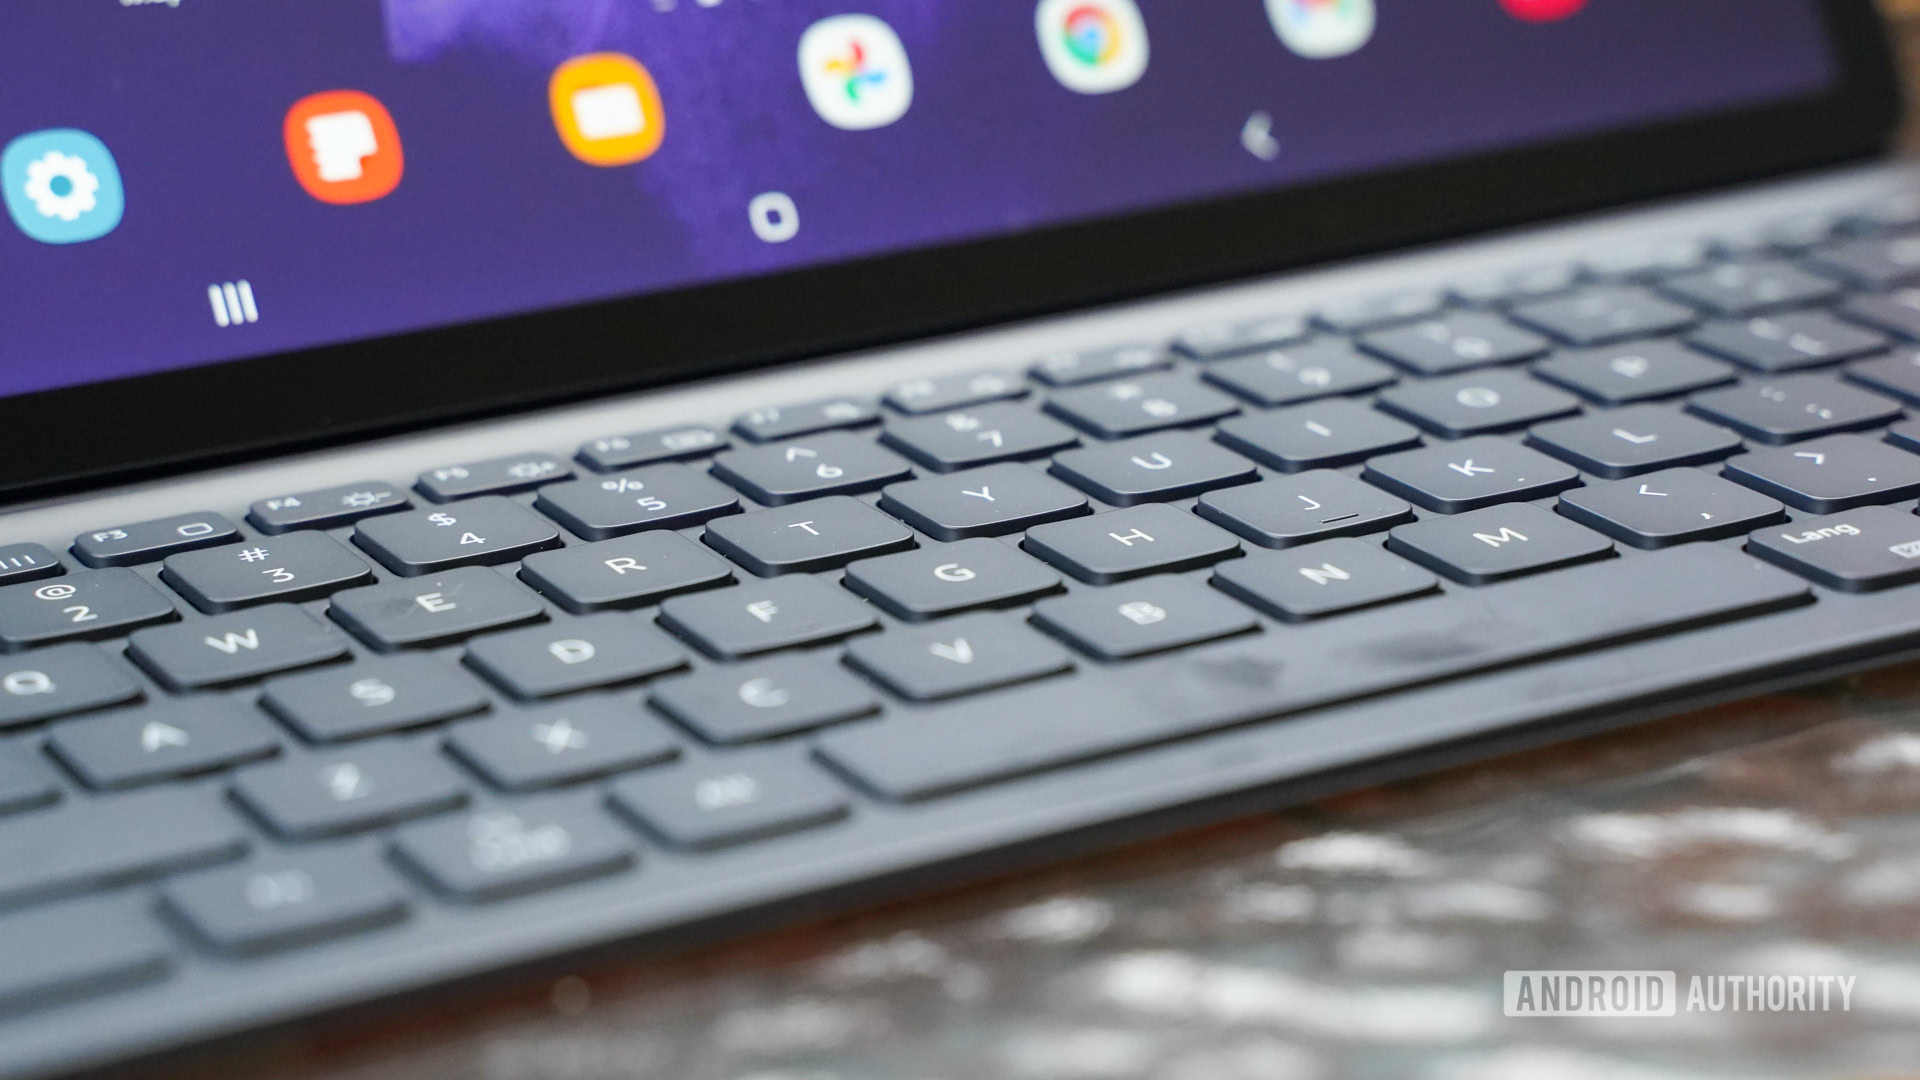 Samsung Galaxy Tab S7 FE keyboard closeup